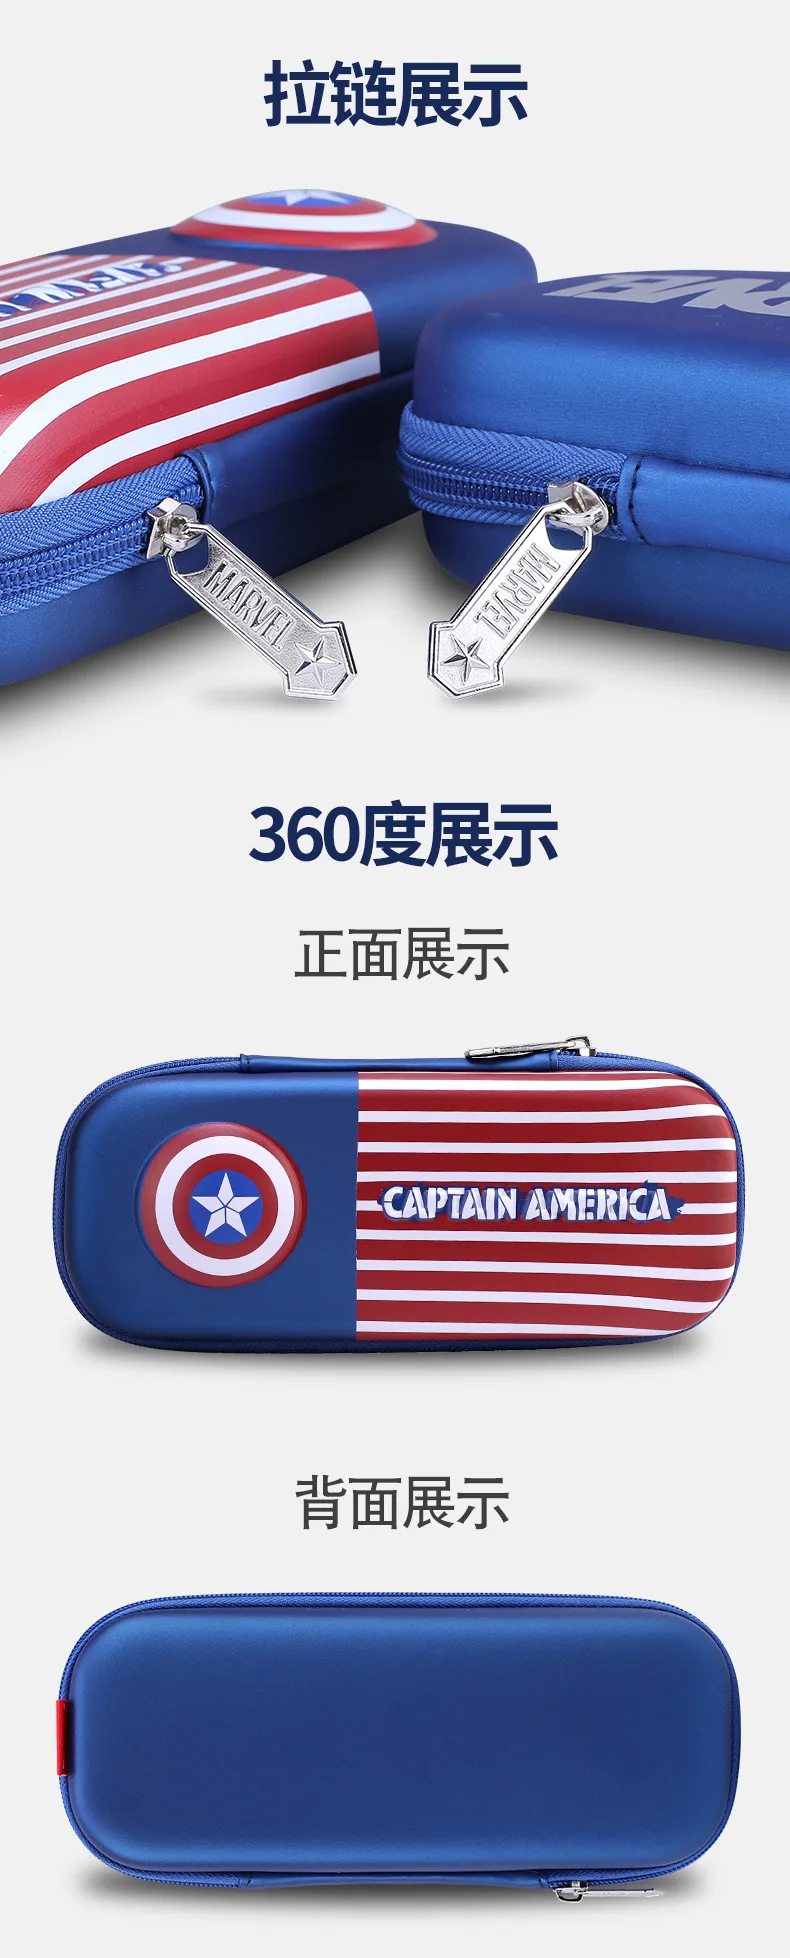 Ящик железный человек Капитан Америка студенческие принадлежности Человек-паук ручка чехол Дисней мальчик подарок награда